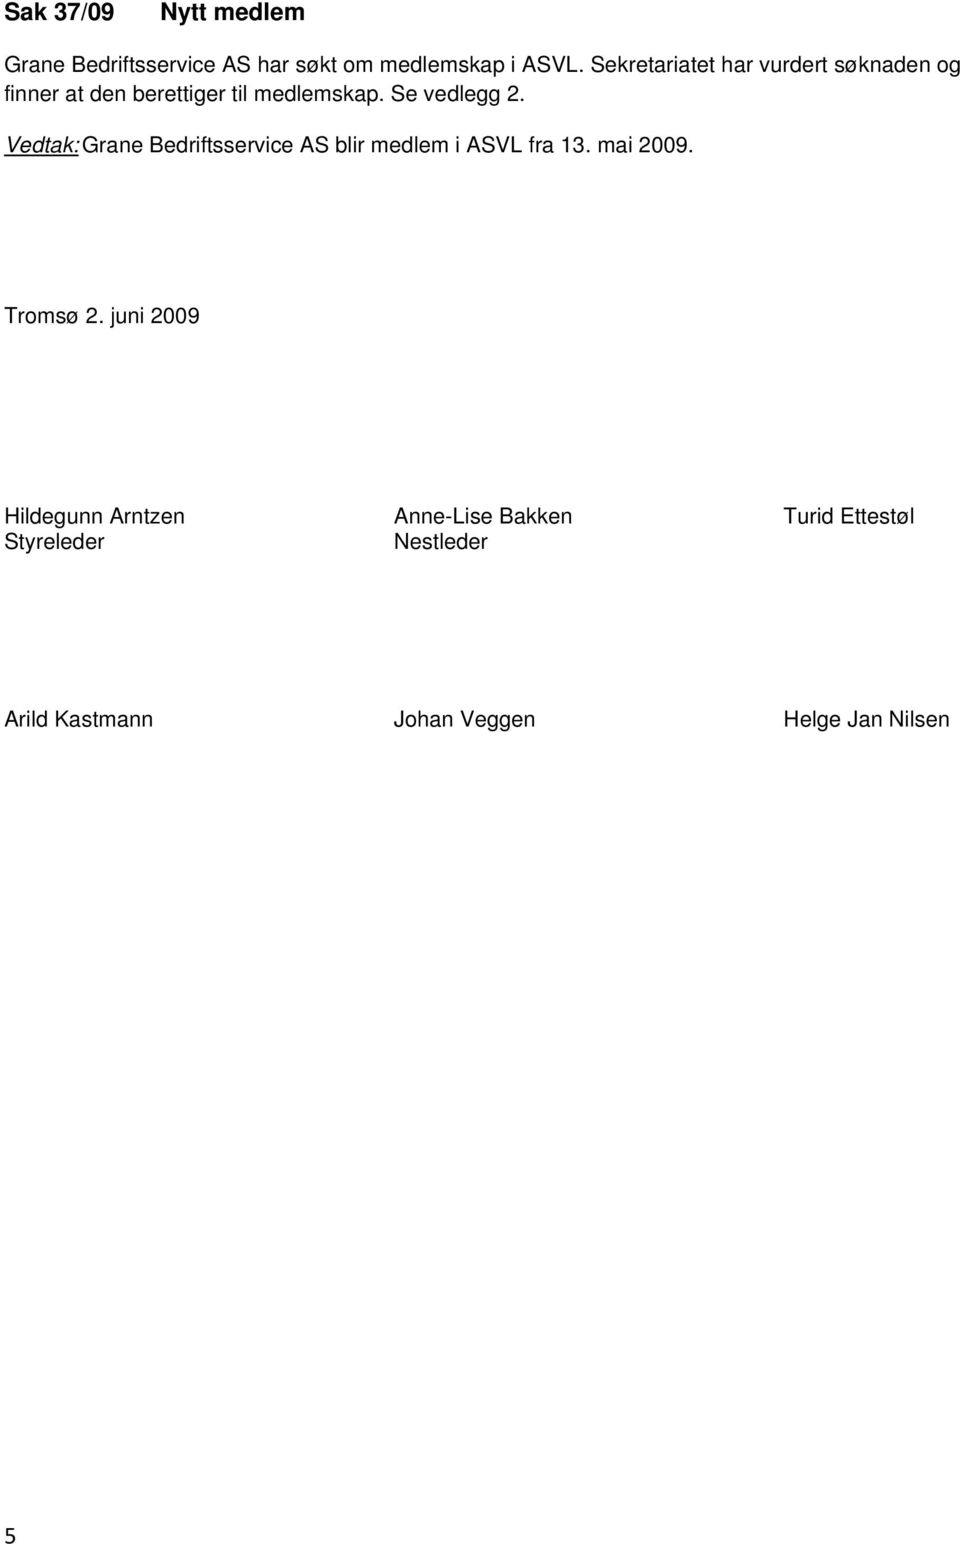 Vedtak: Grane Bedriftsservice AS blir medlem i ASVL fra 13. mai 2009. Tromsø 2.